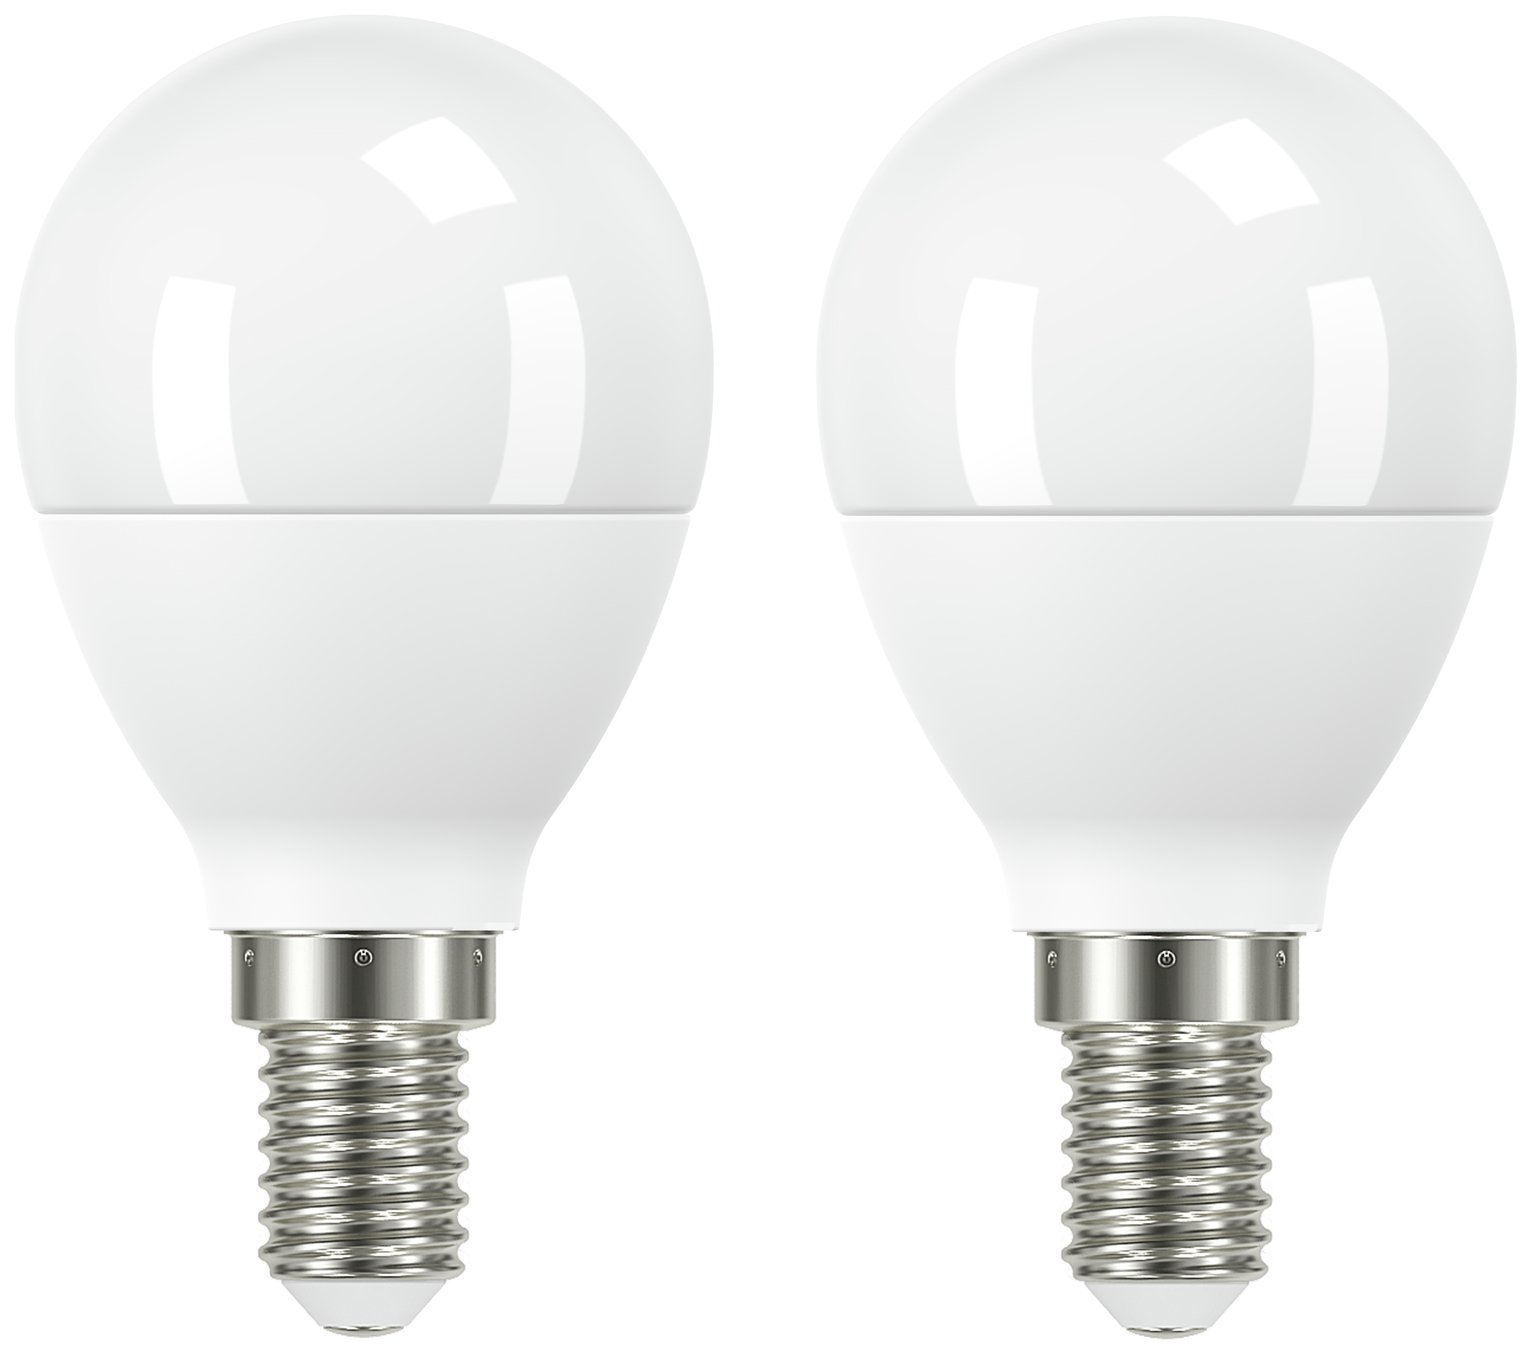 Argos Home 7.2W LED SES Light Bulb - 2 Pack